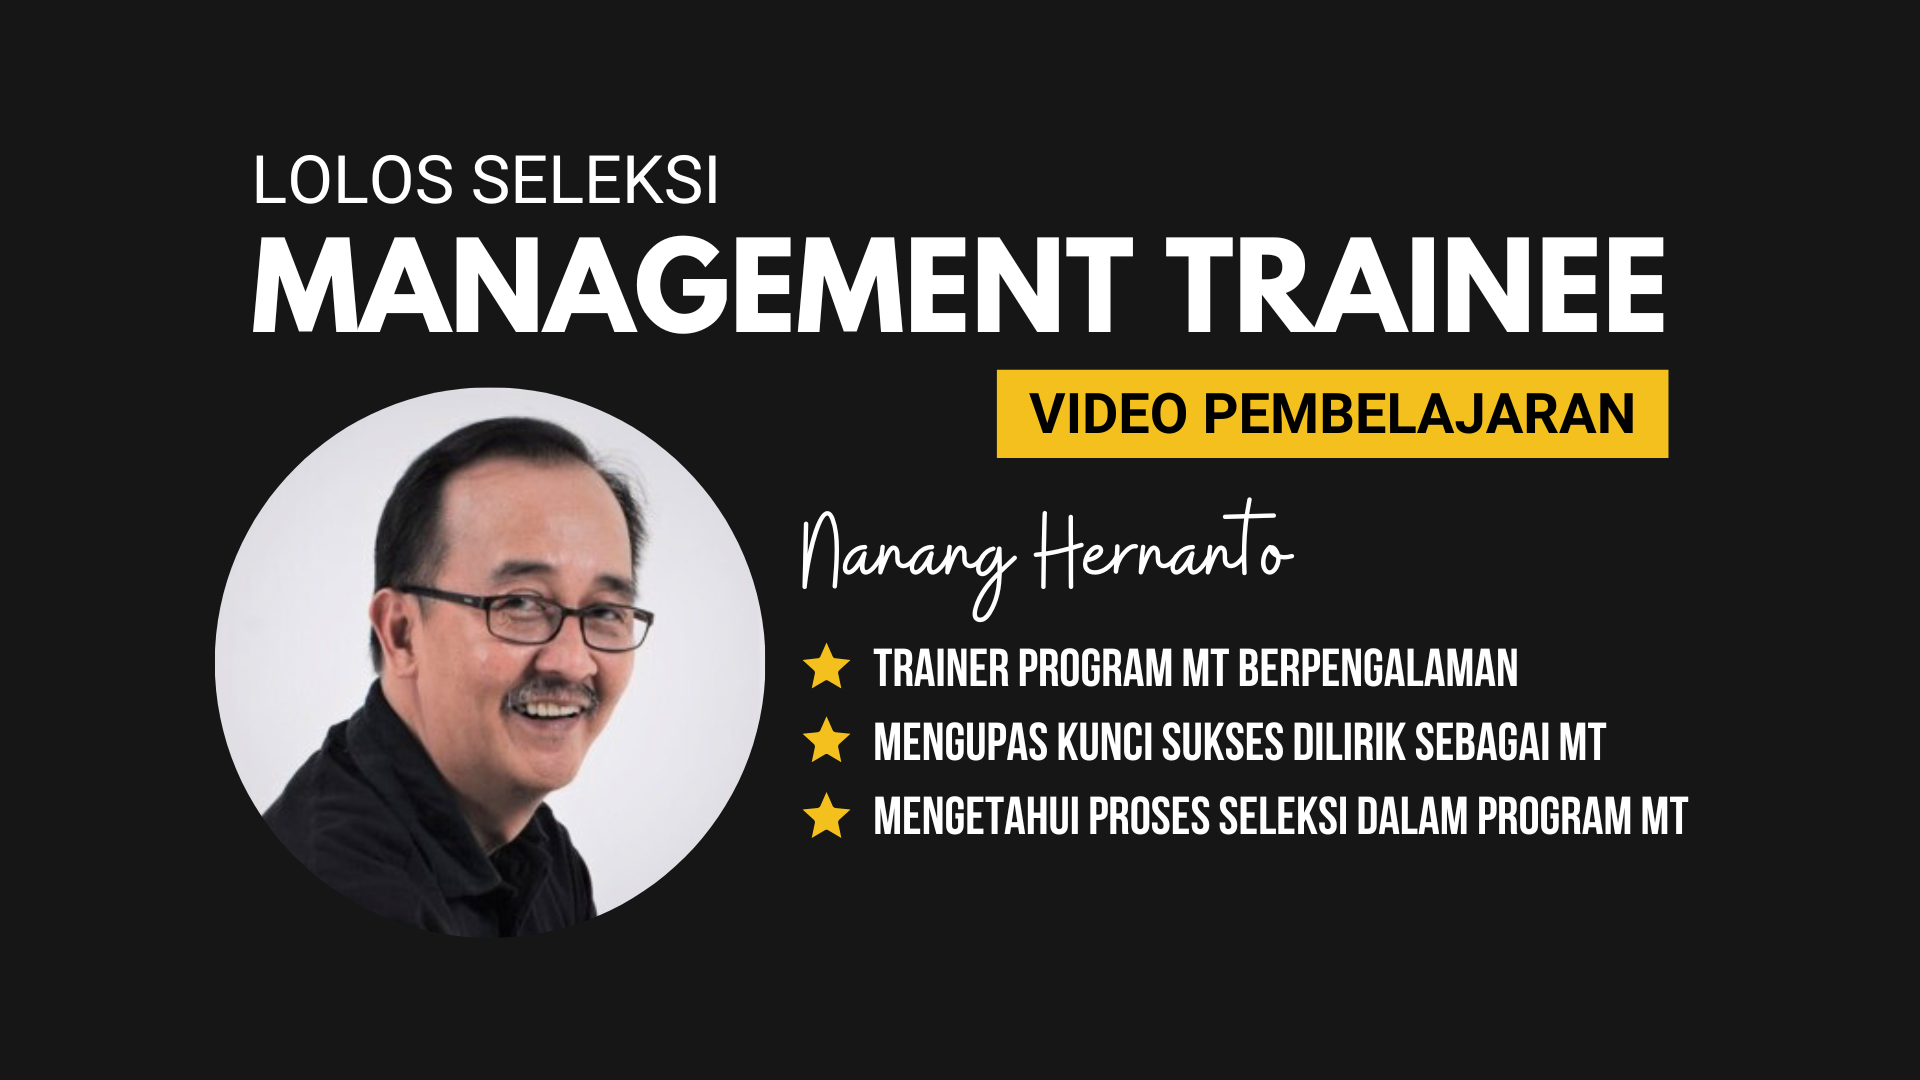 Lolos Seleksi Management Trainee (Video Pembelajaran)